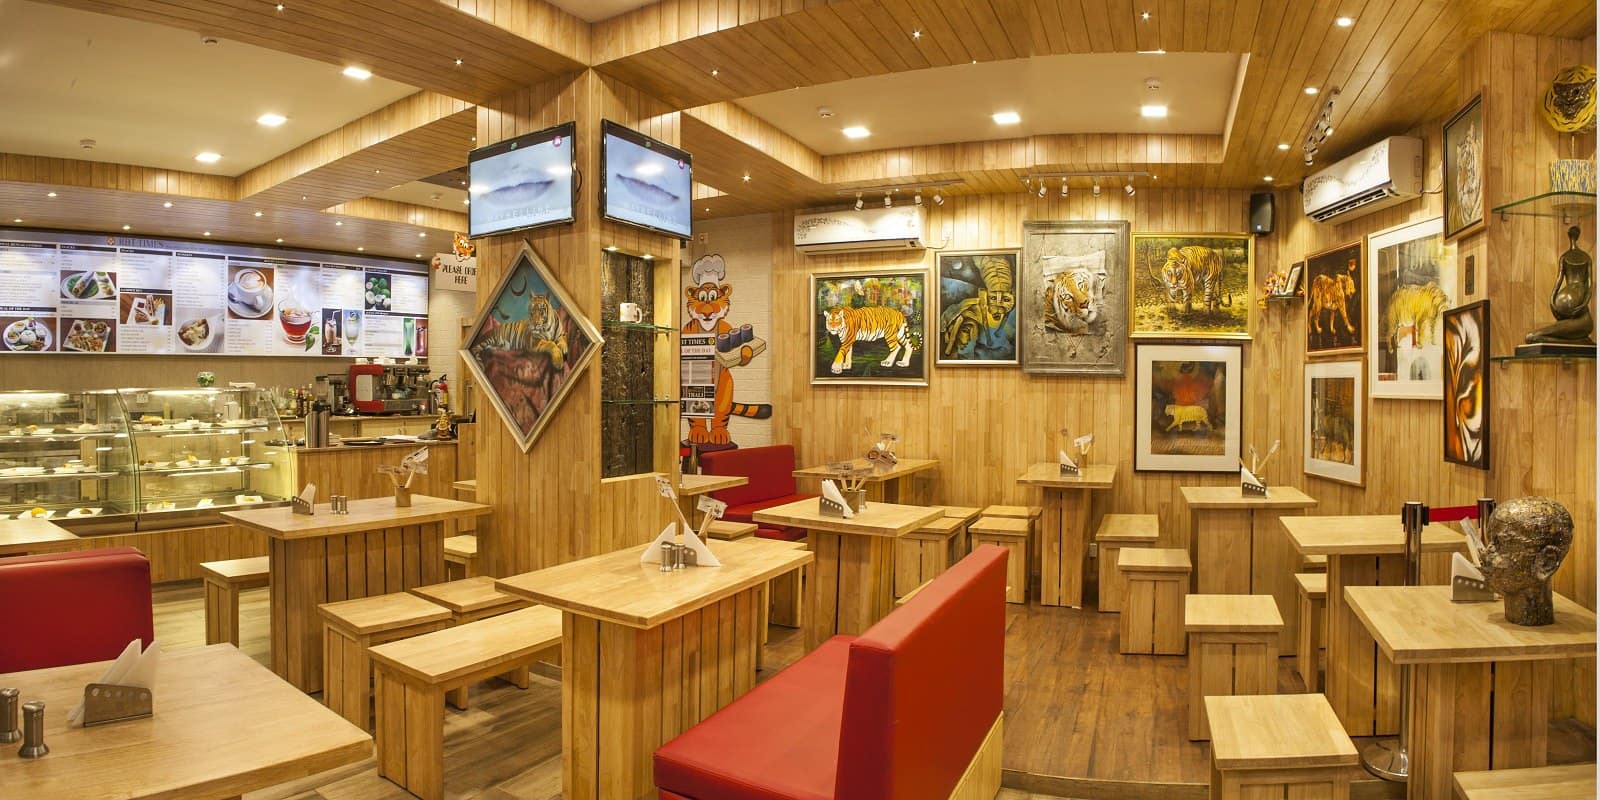 THE ROYAL BENGAL TIGER CAFE, BEST CAFE IN KOLKATA